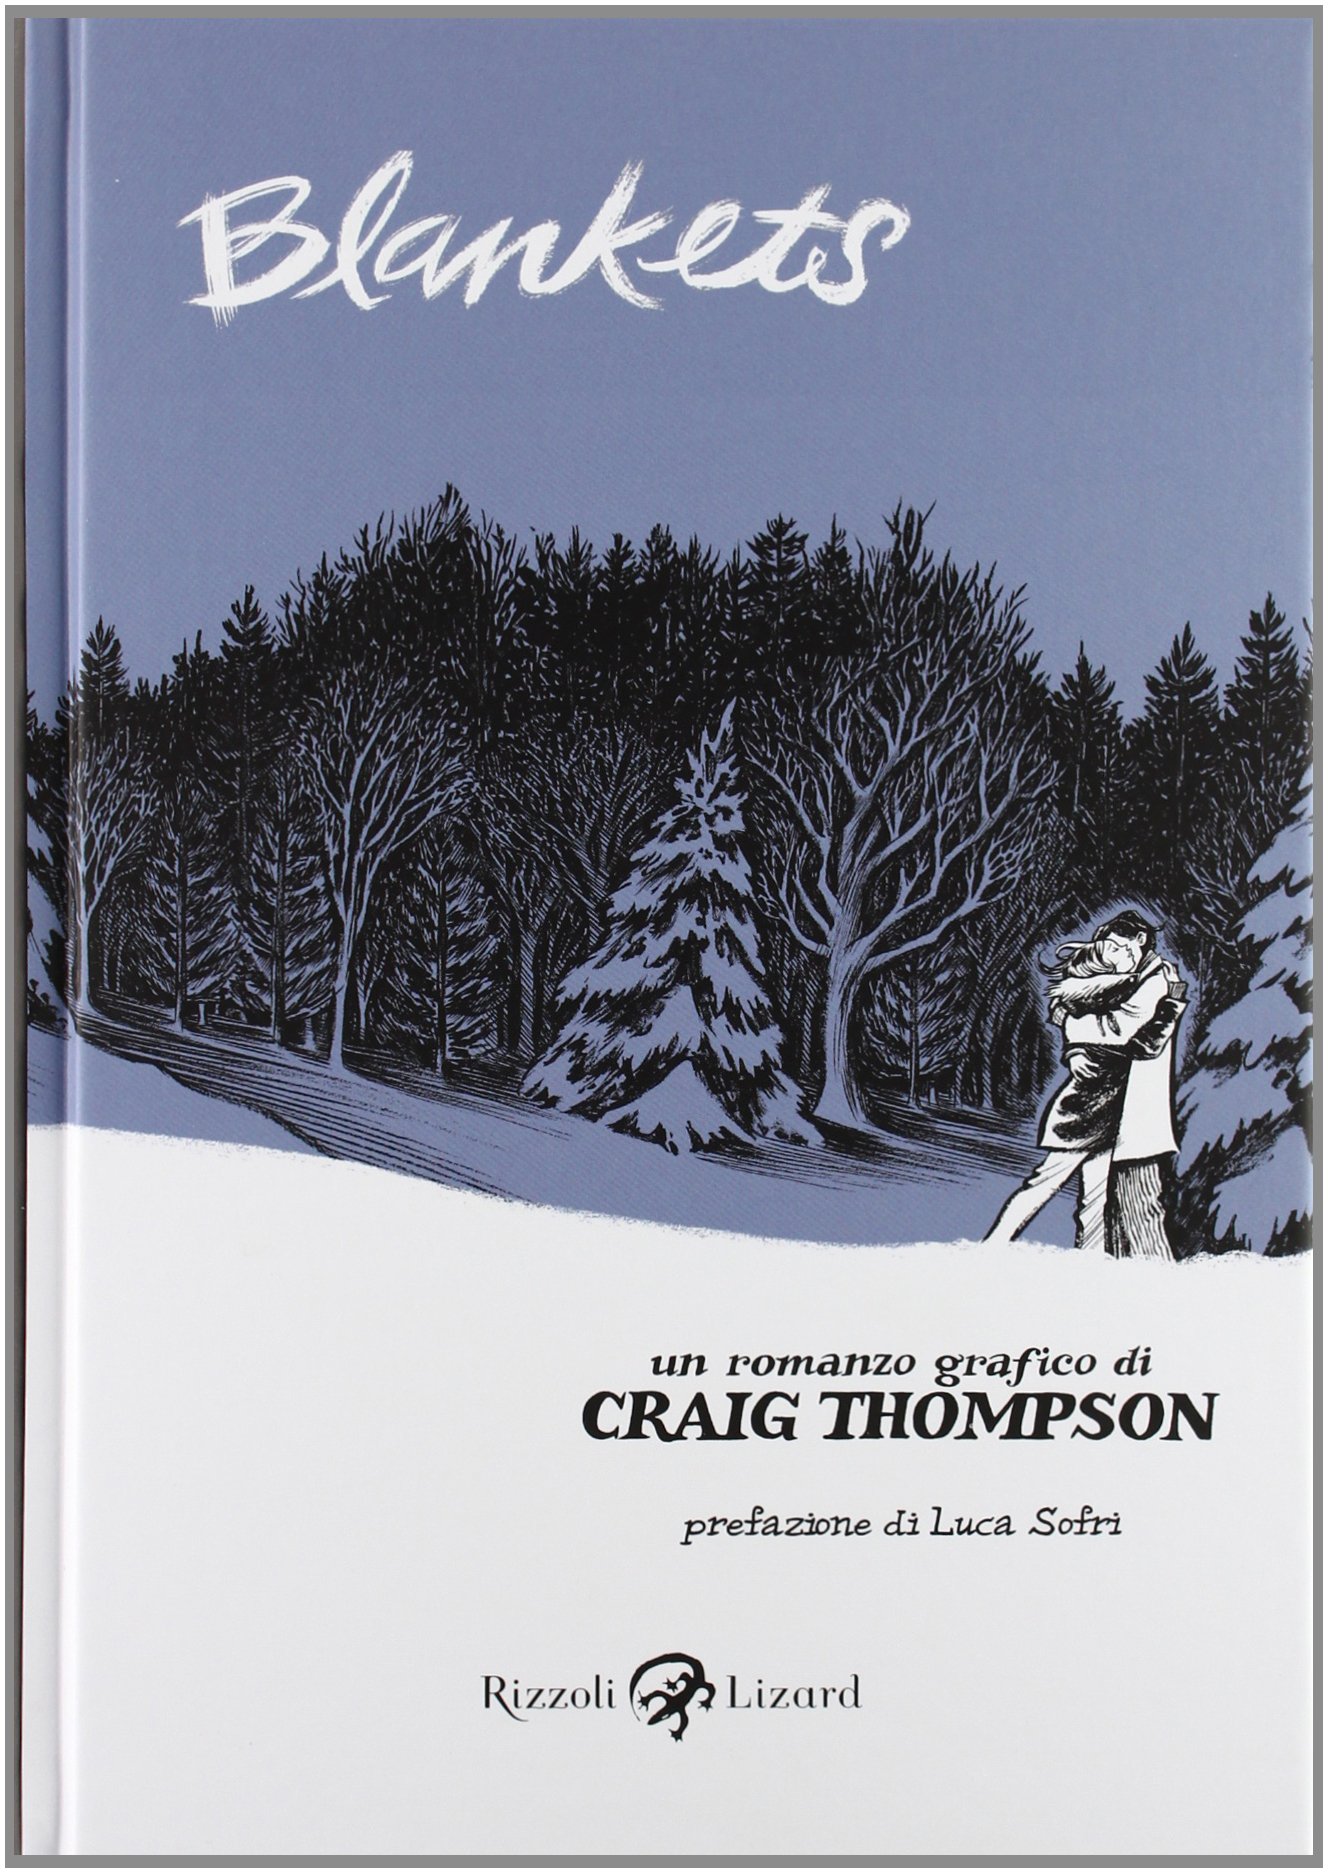 Libri Craig Thompson - Blankets NUOVO SIGILLATO, EDIZIONE DEL 27/10/2010 SUBITO DISPONIBILE